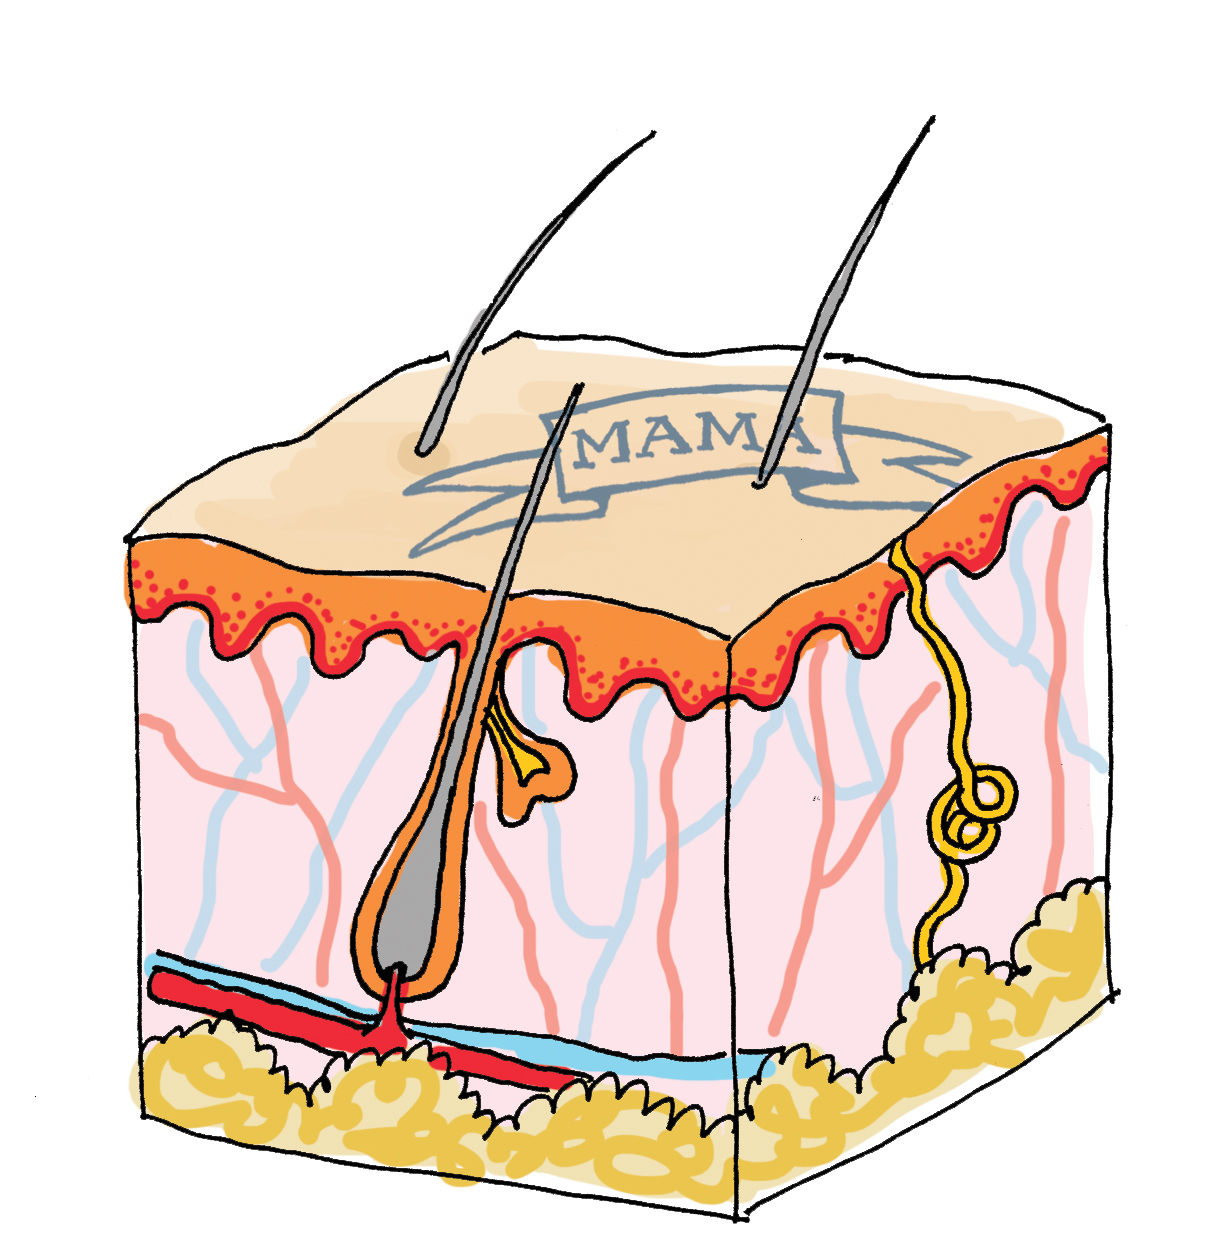 Tekening van een dwarsdoorsnede van de huid met verschillende huidlagen, haarzakje en haar